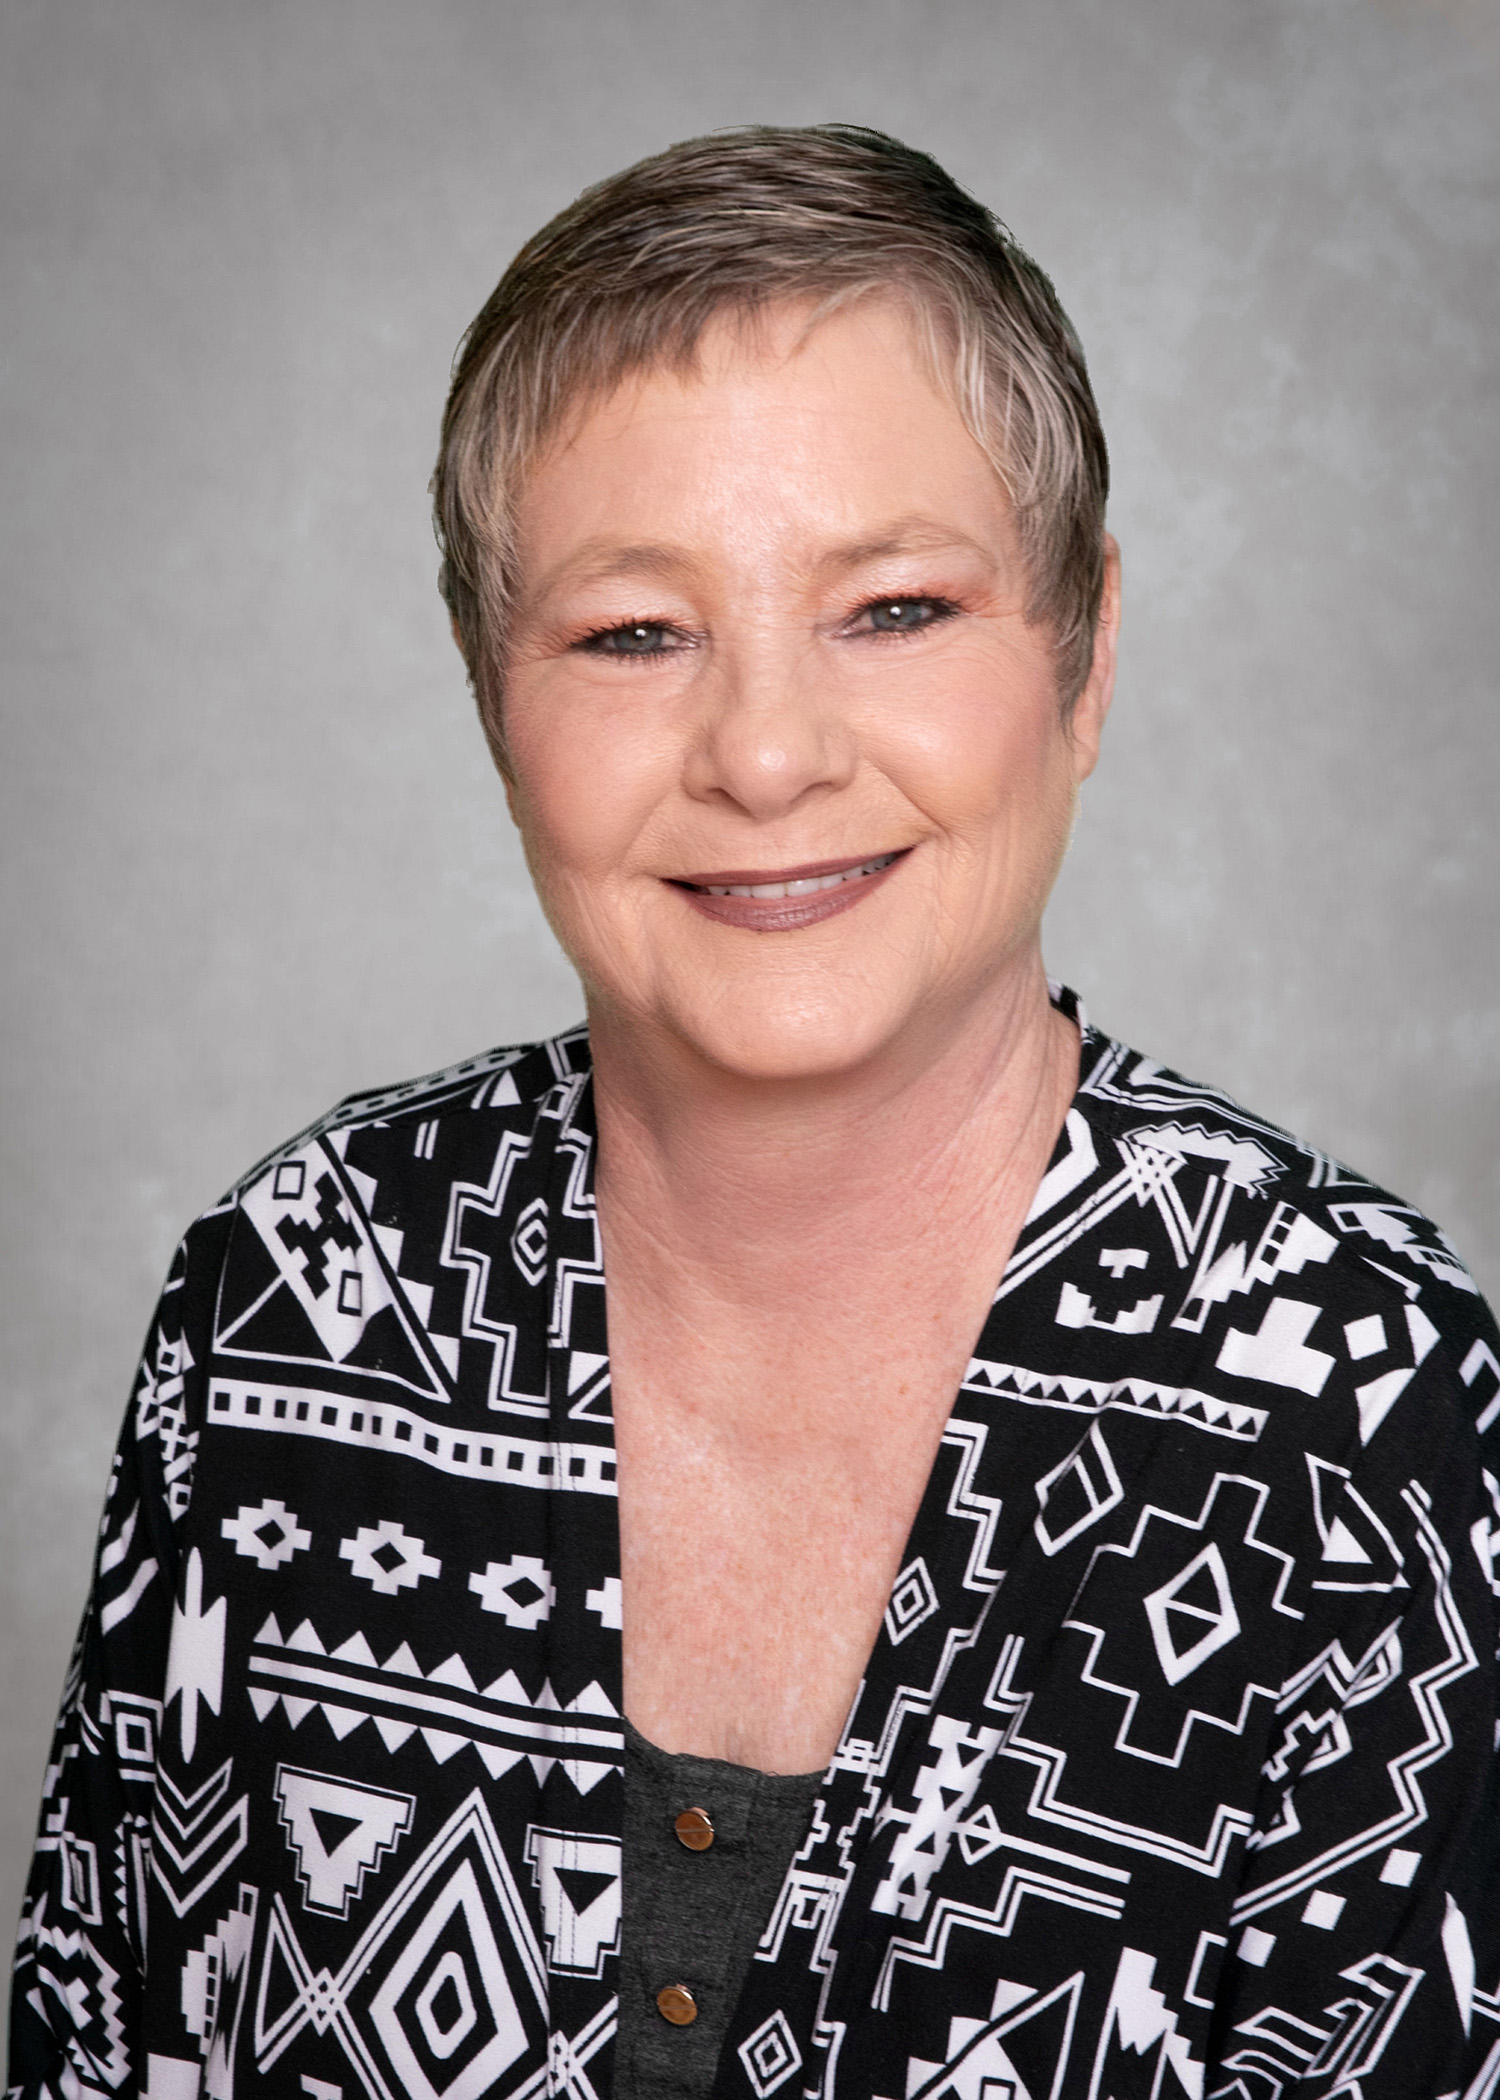 Dr. Cindy Beisner